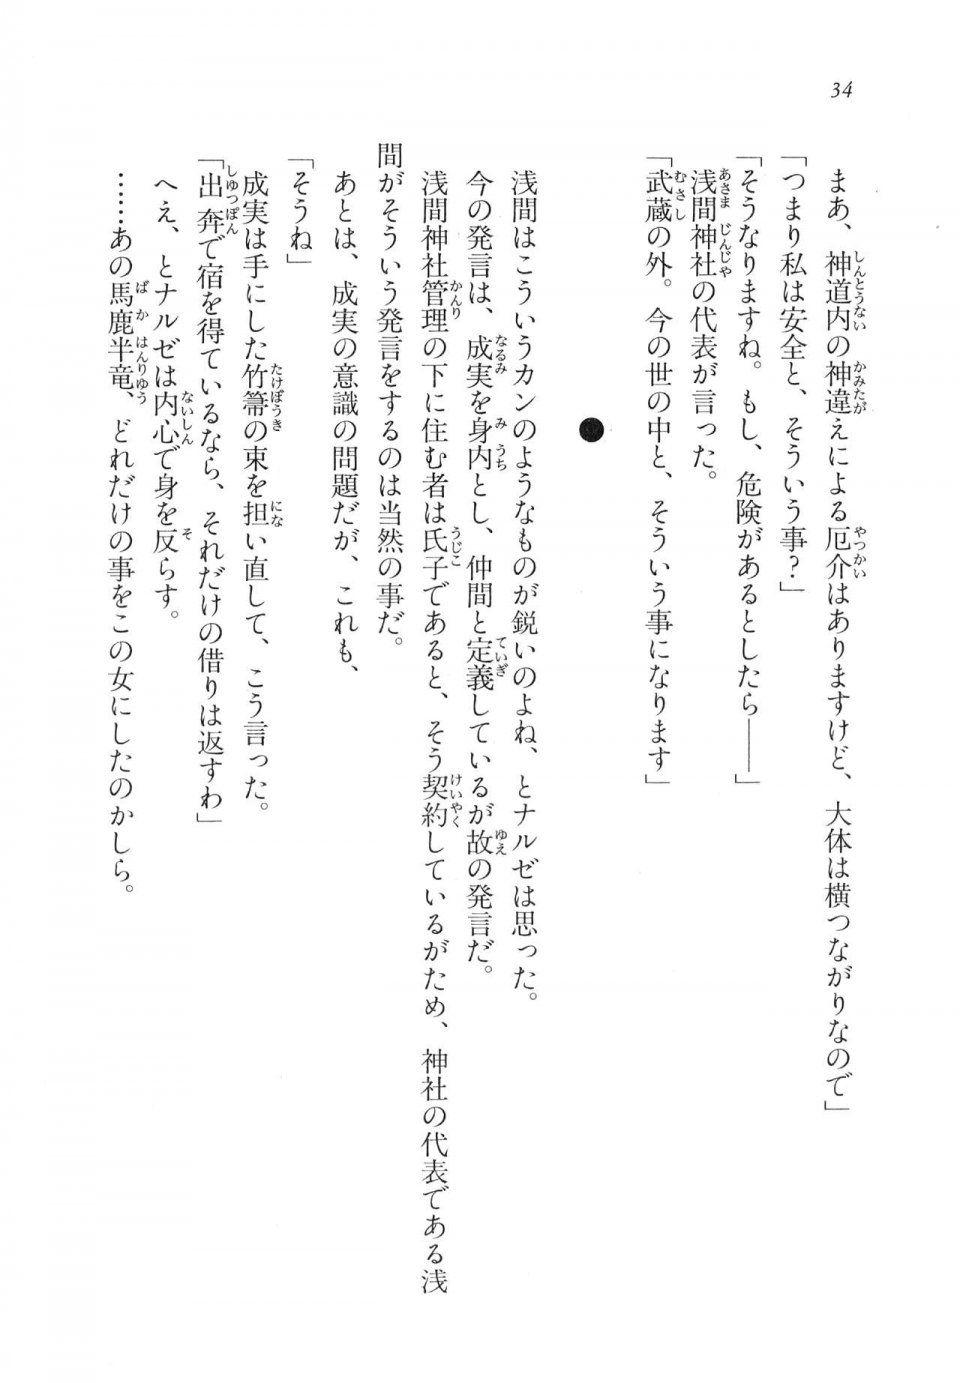 Kyoukai Senjou no Horizon LN Vol 11(5A) - Photo #35